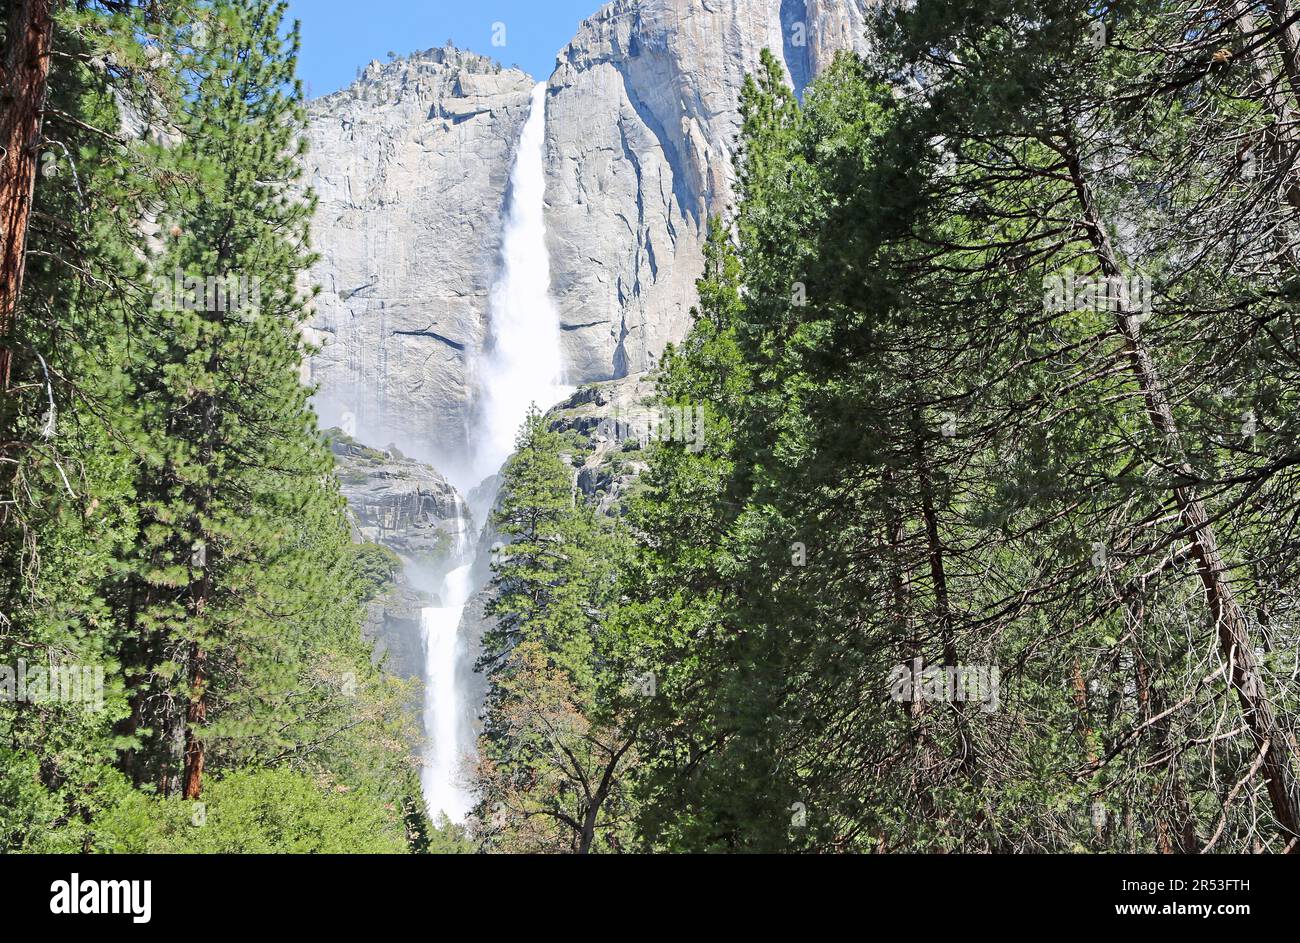 Standing under Yosemite Falls - Yosemite NP, California Stock Photo